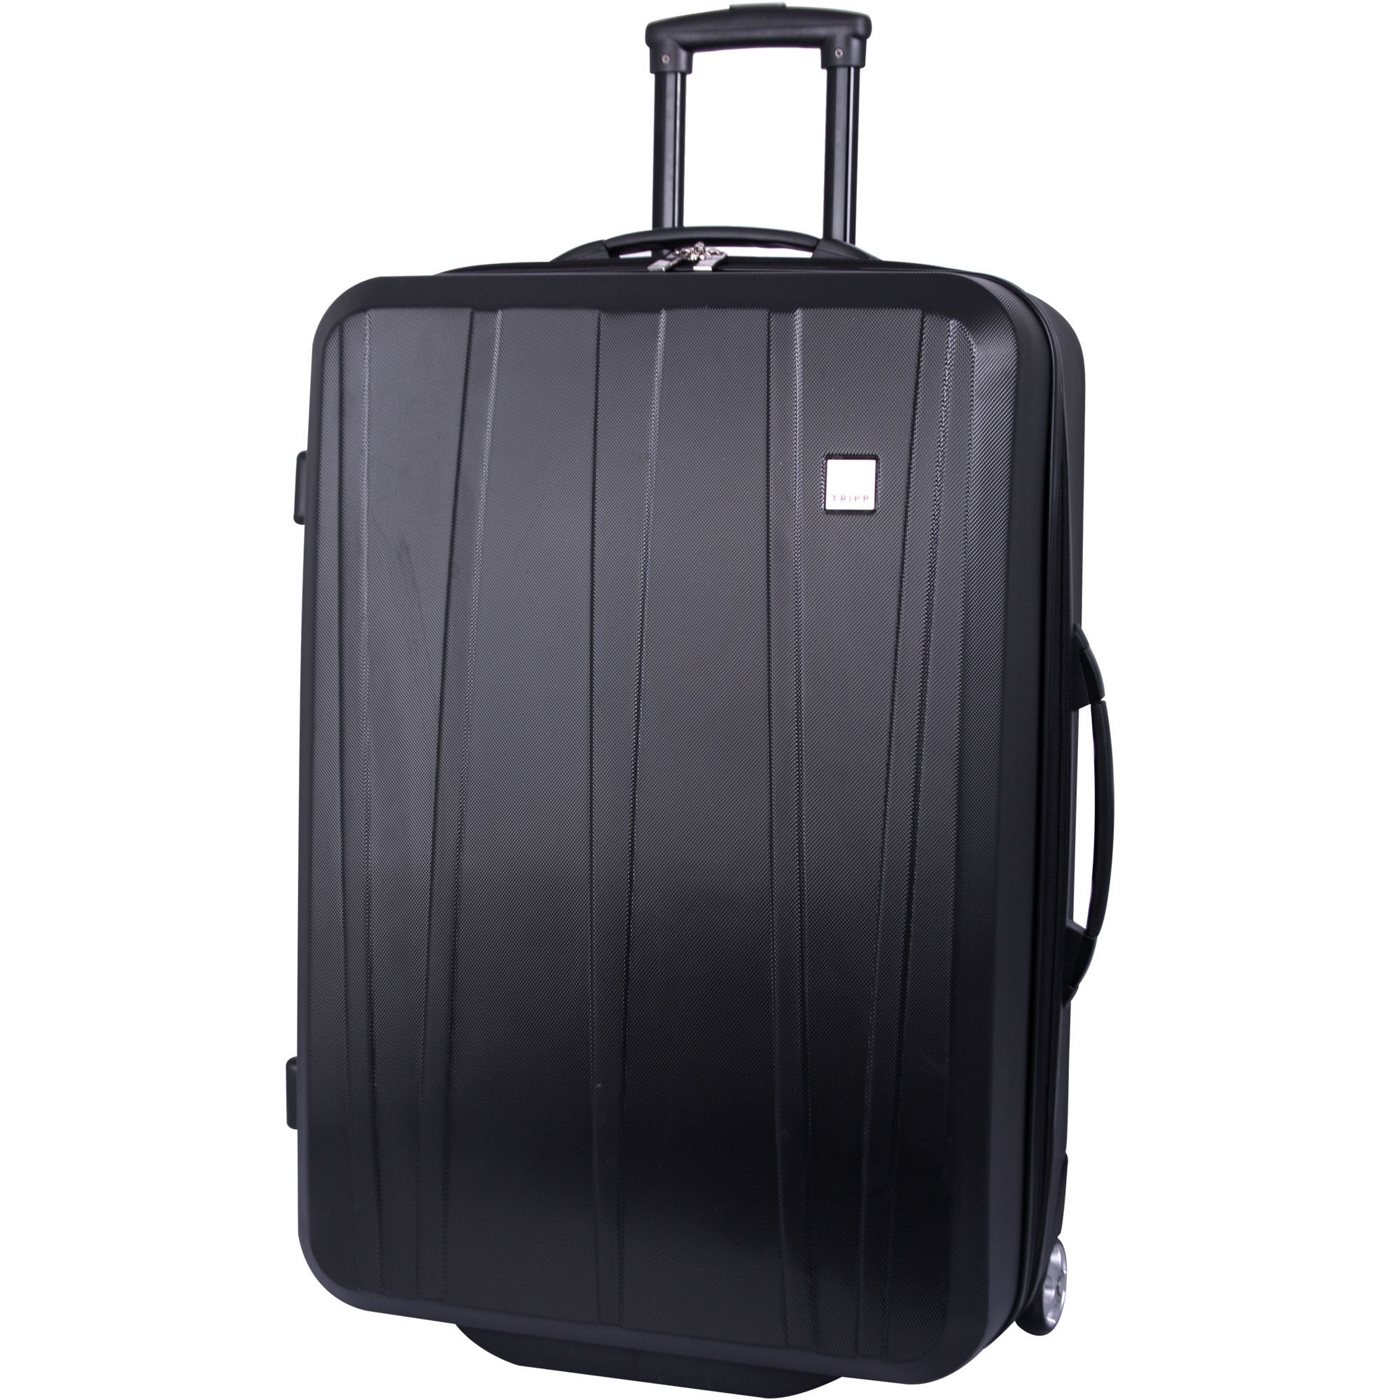 Tripp Essentials Hard Large Suitcase Black